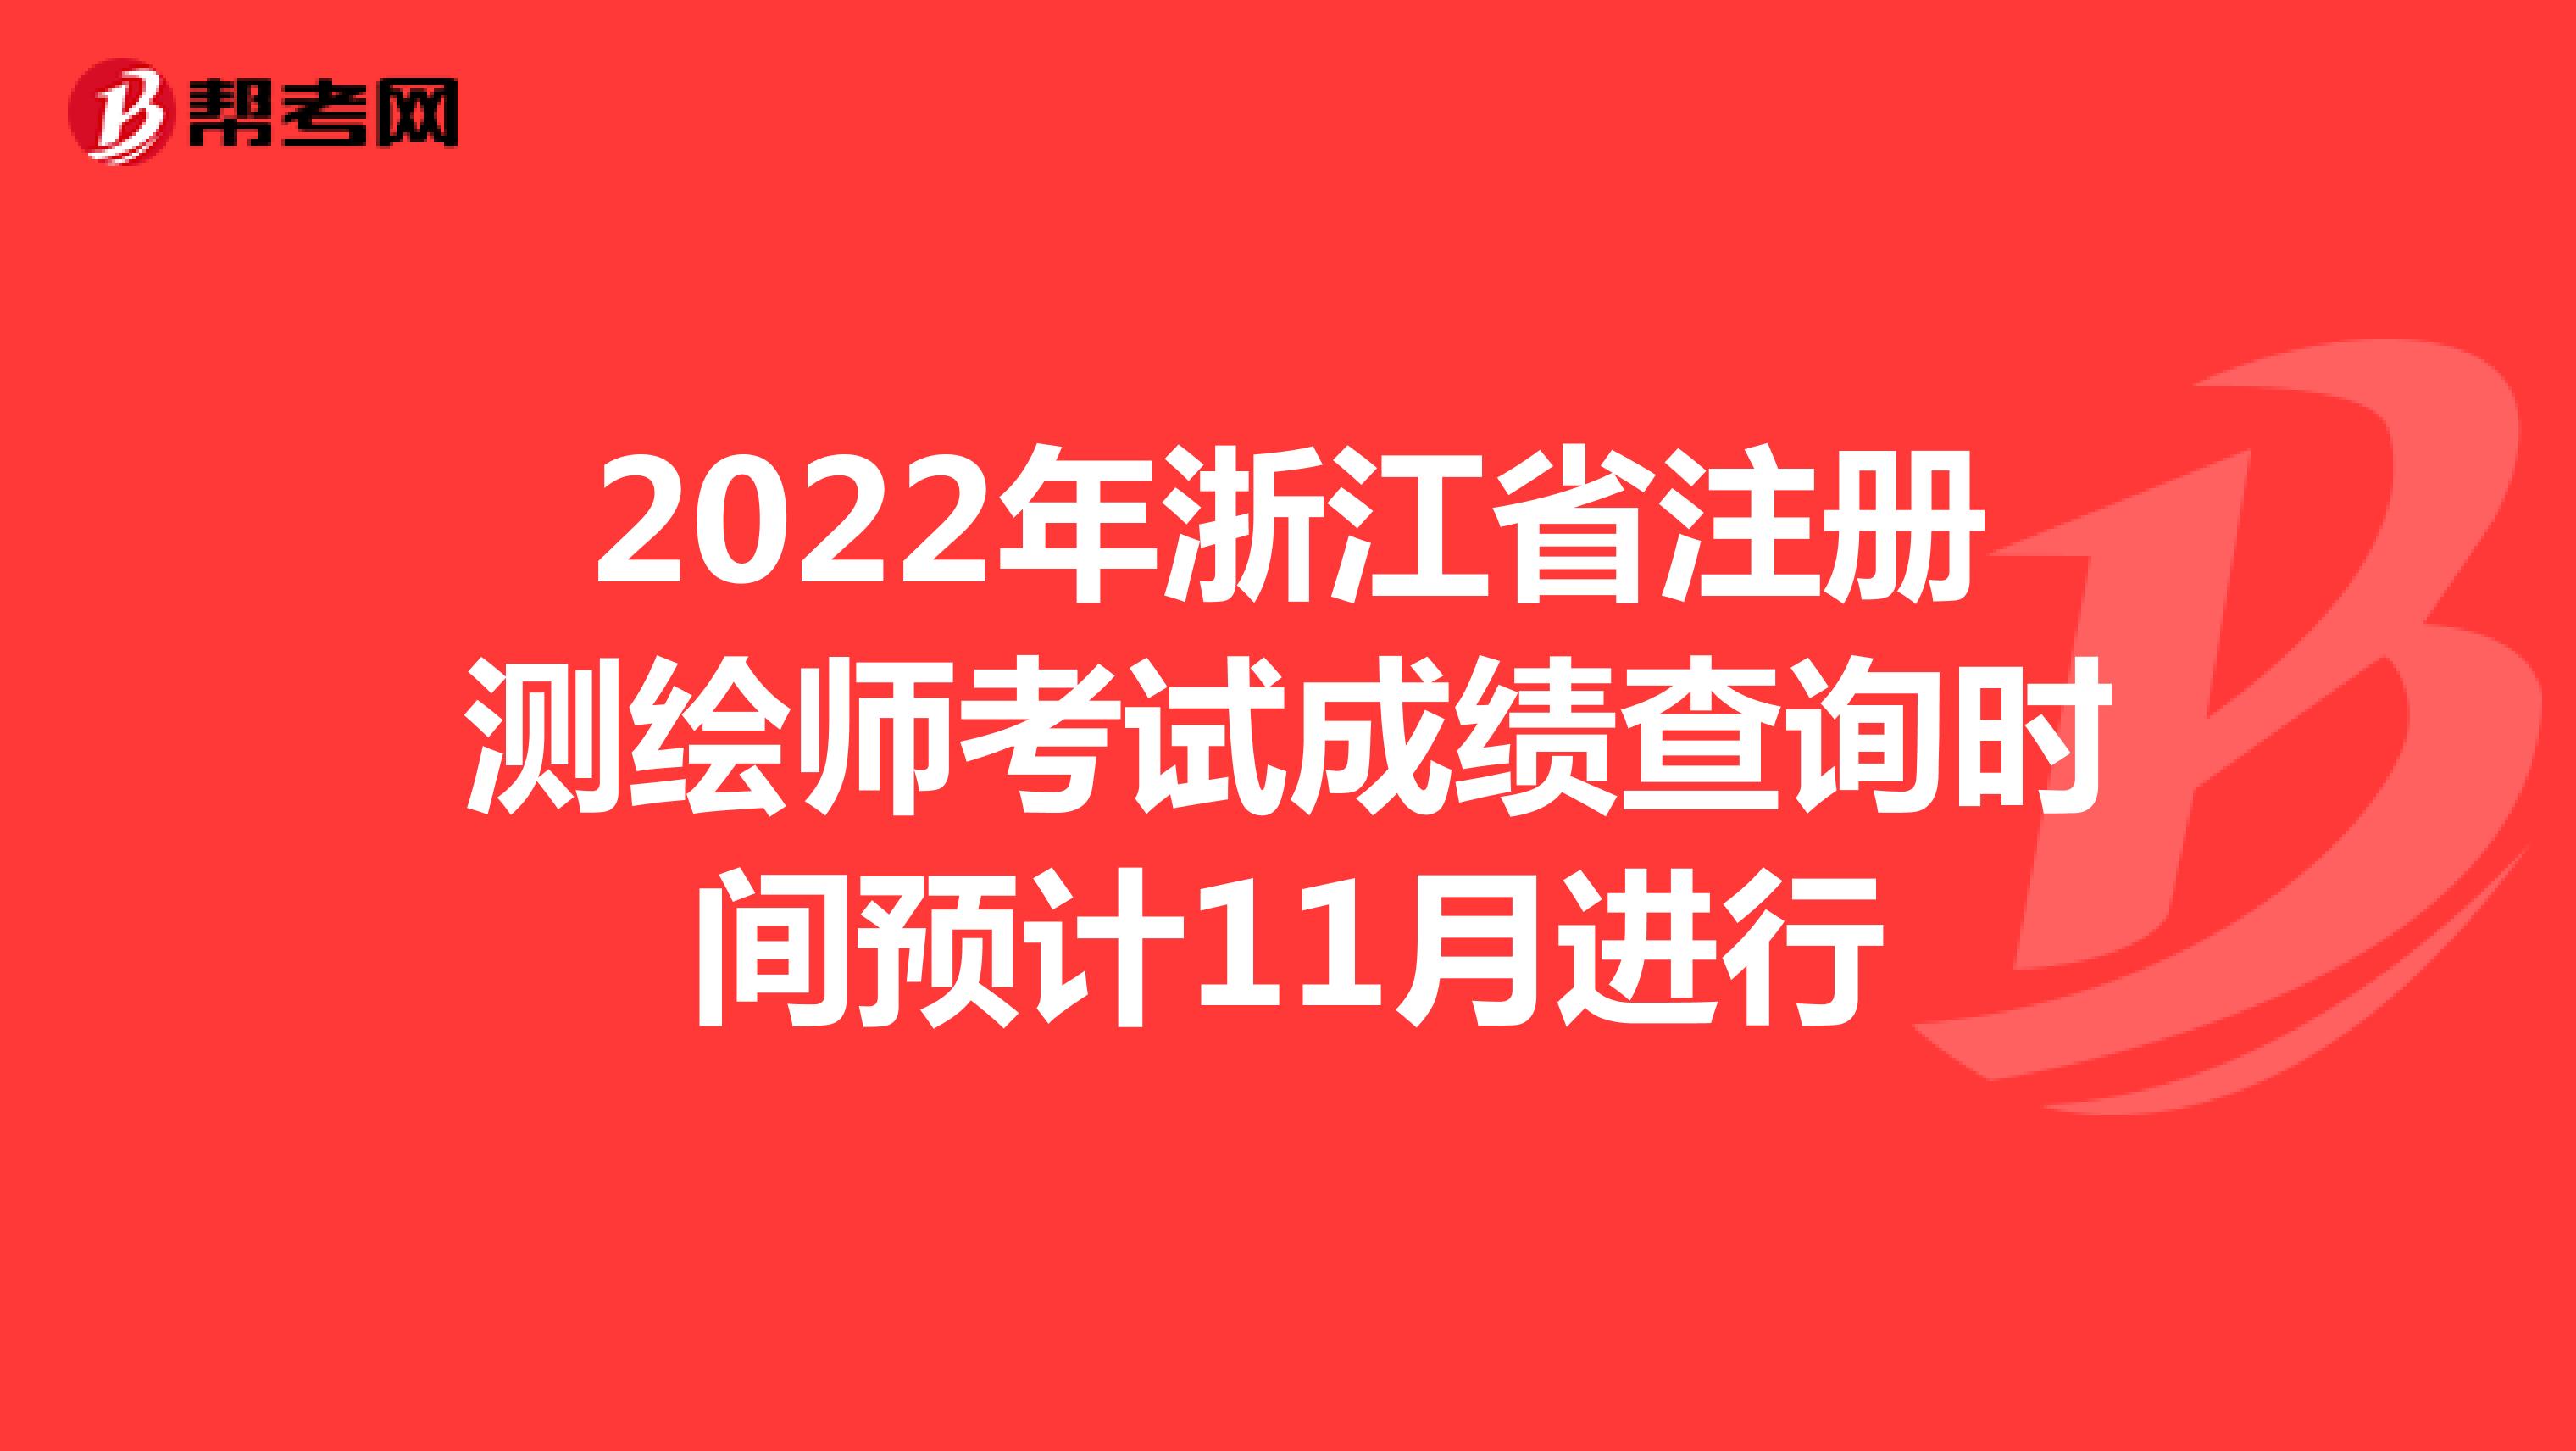 2022年浙江省注册测绘师考试成绩查询时间预计11月进行